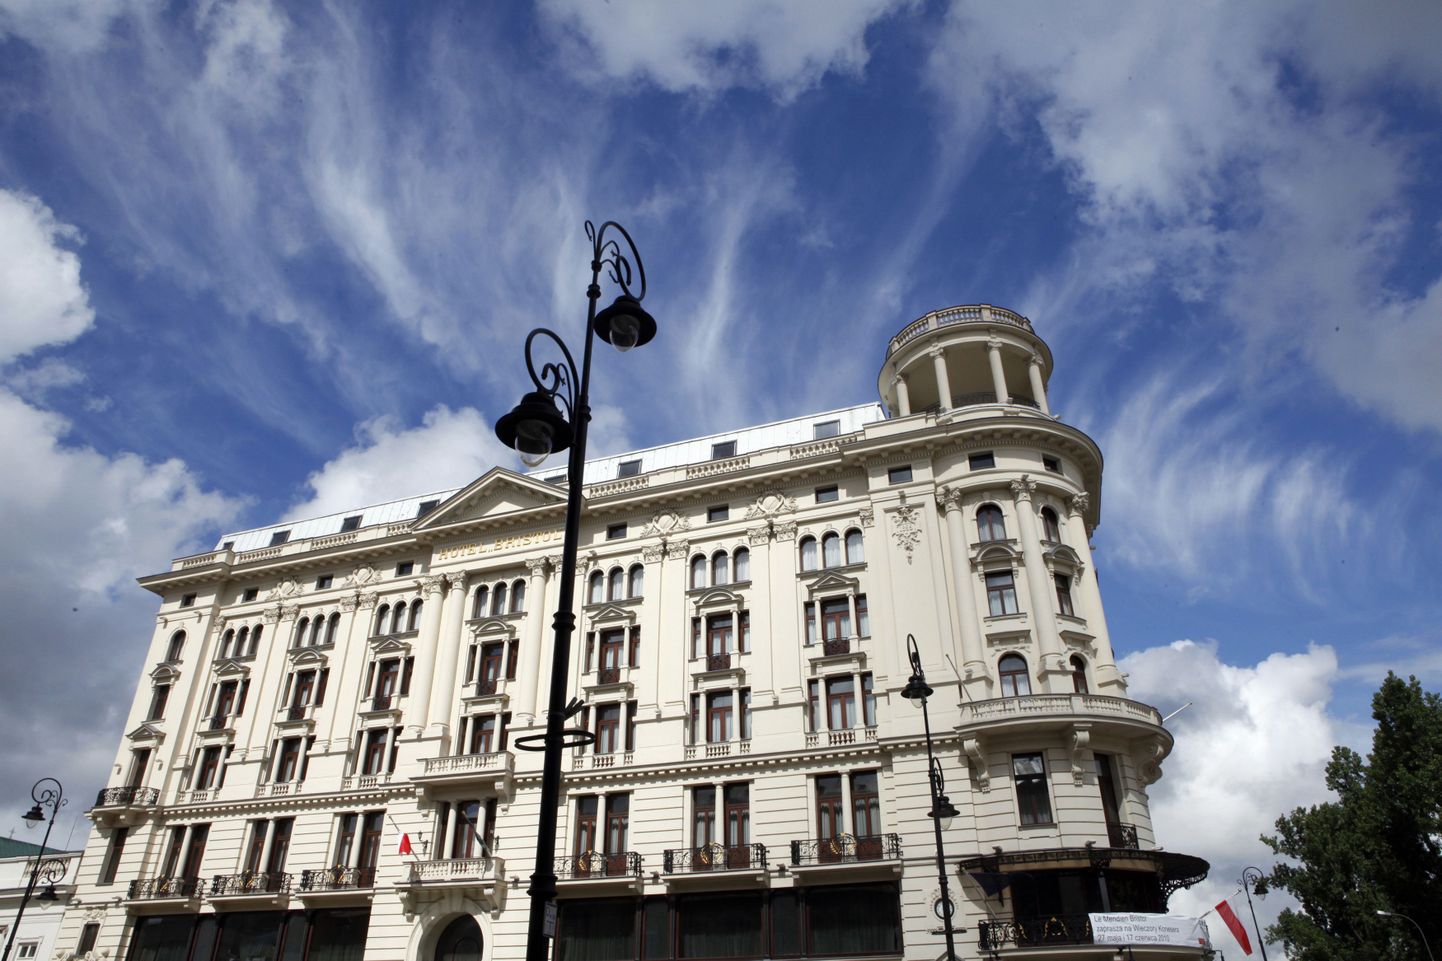 Le Meridien Bristol - один из старейших и самых дорогих отелей Варшавы.